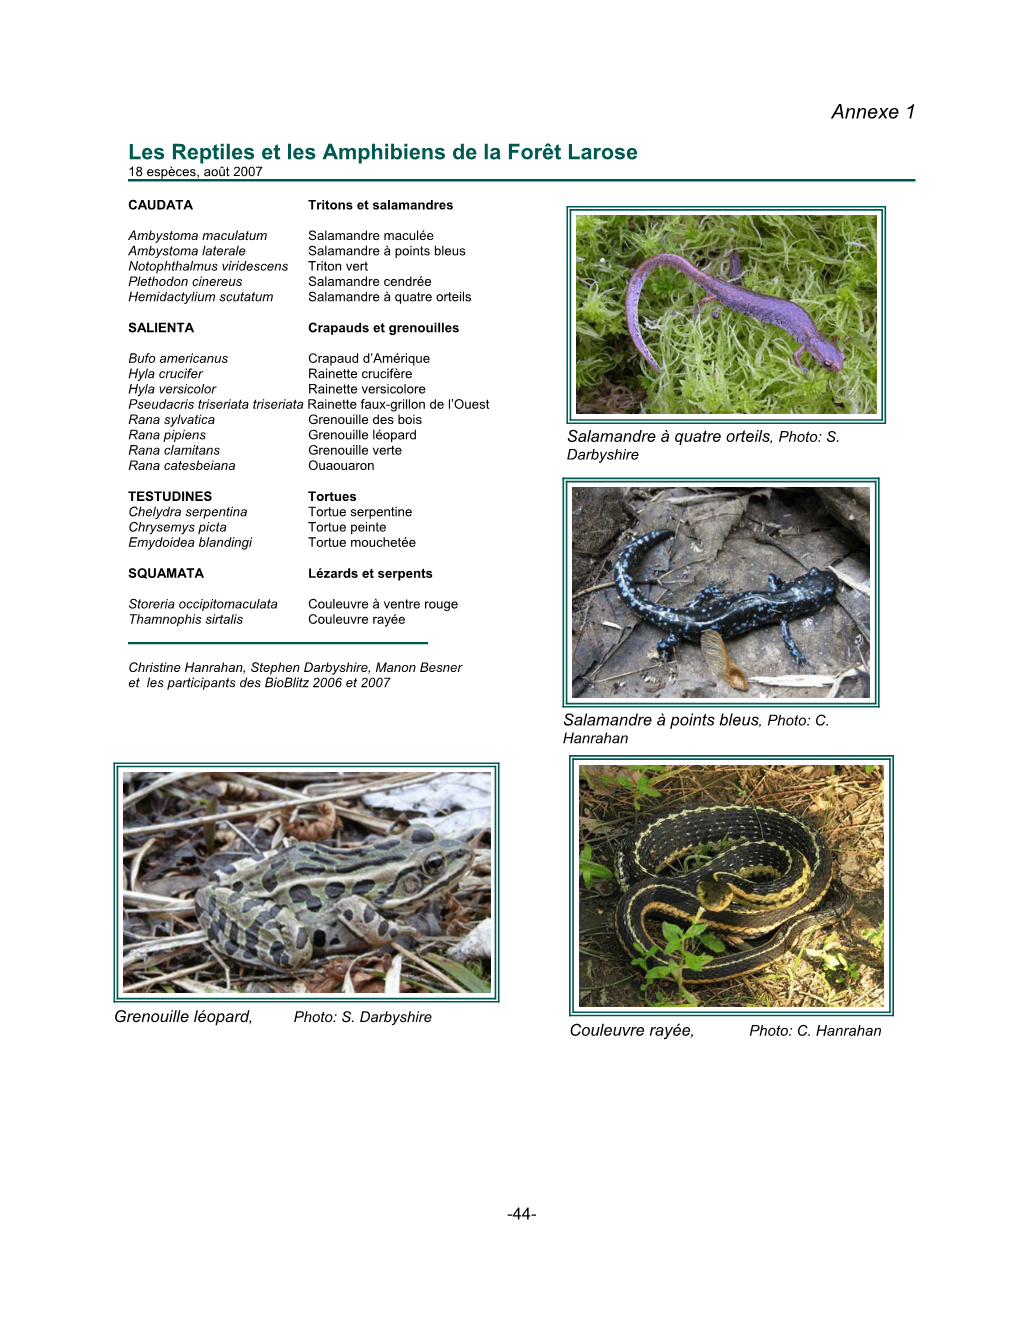 Les Reptiles Et Les Amphibiens De La Forêt Larose 18 Espèces, Août 2007